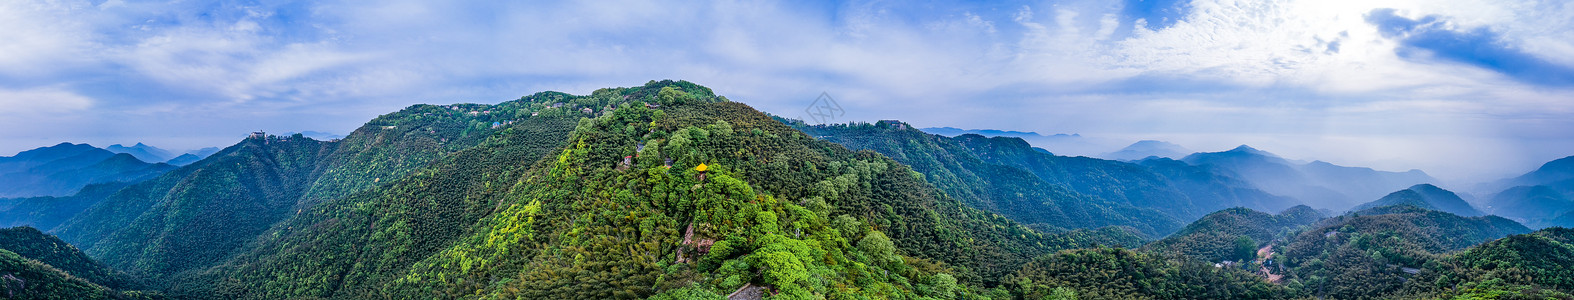 日然光拍摄莫干山顶峰全景自然风景背景